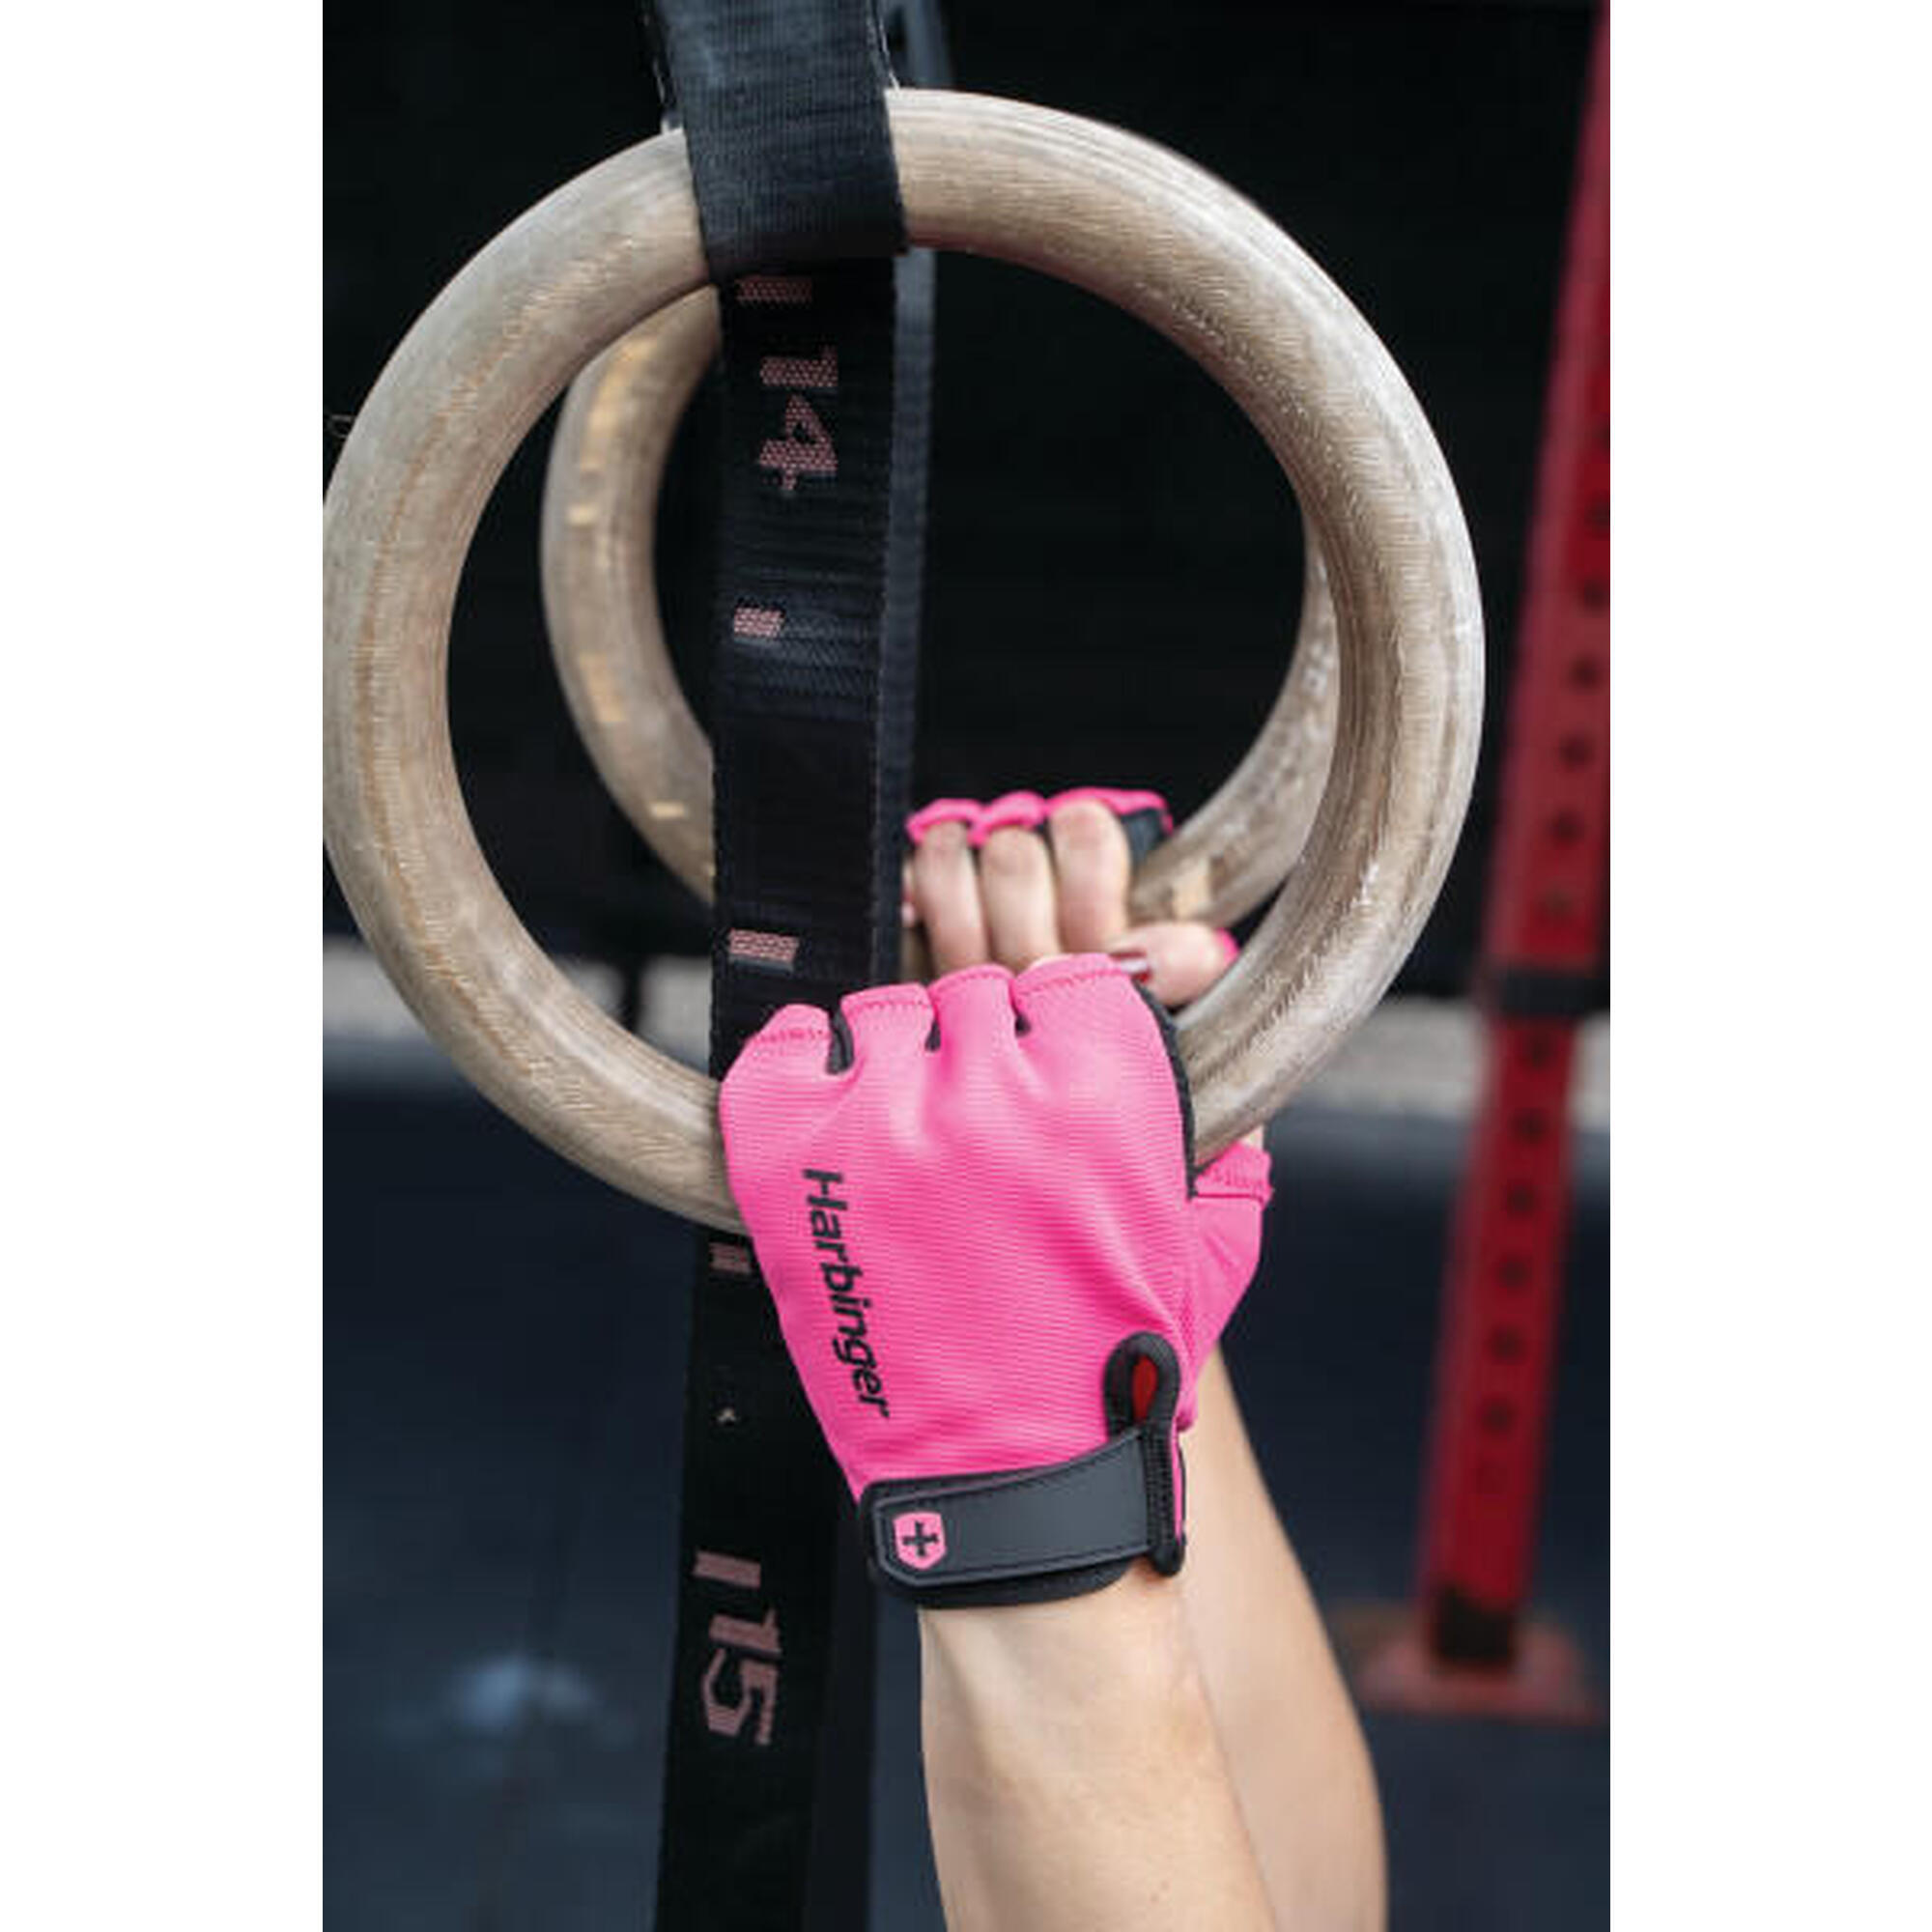 Harbinger dameshandschoen in roze voor ideaal trainingscomfort Maat S